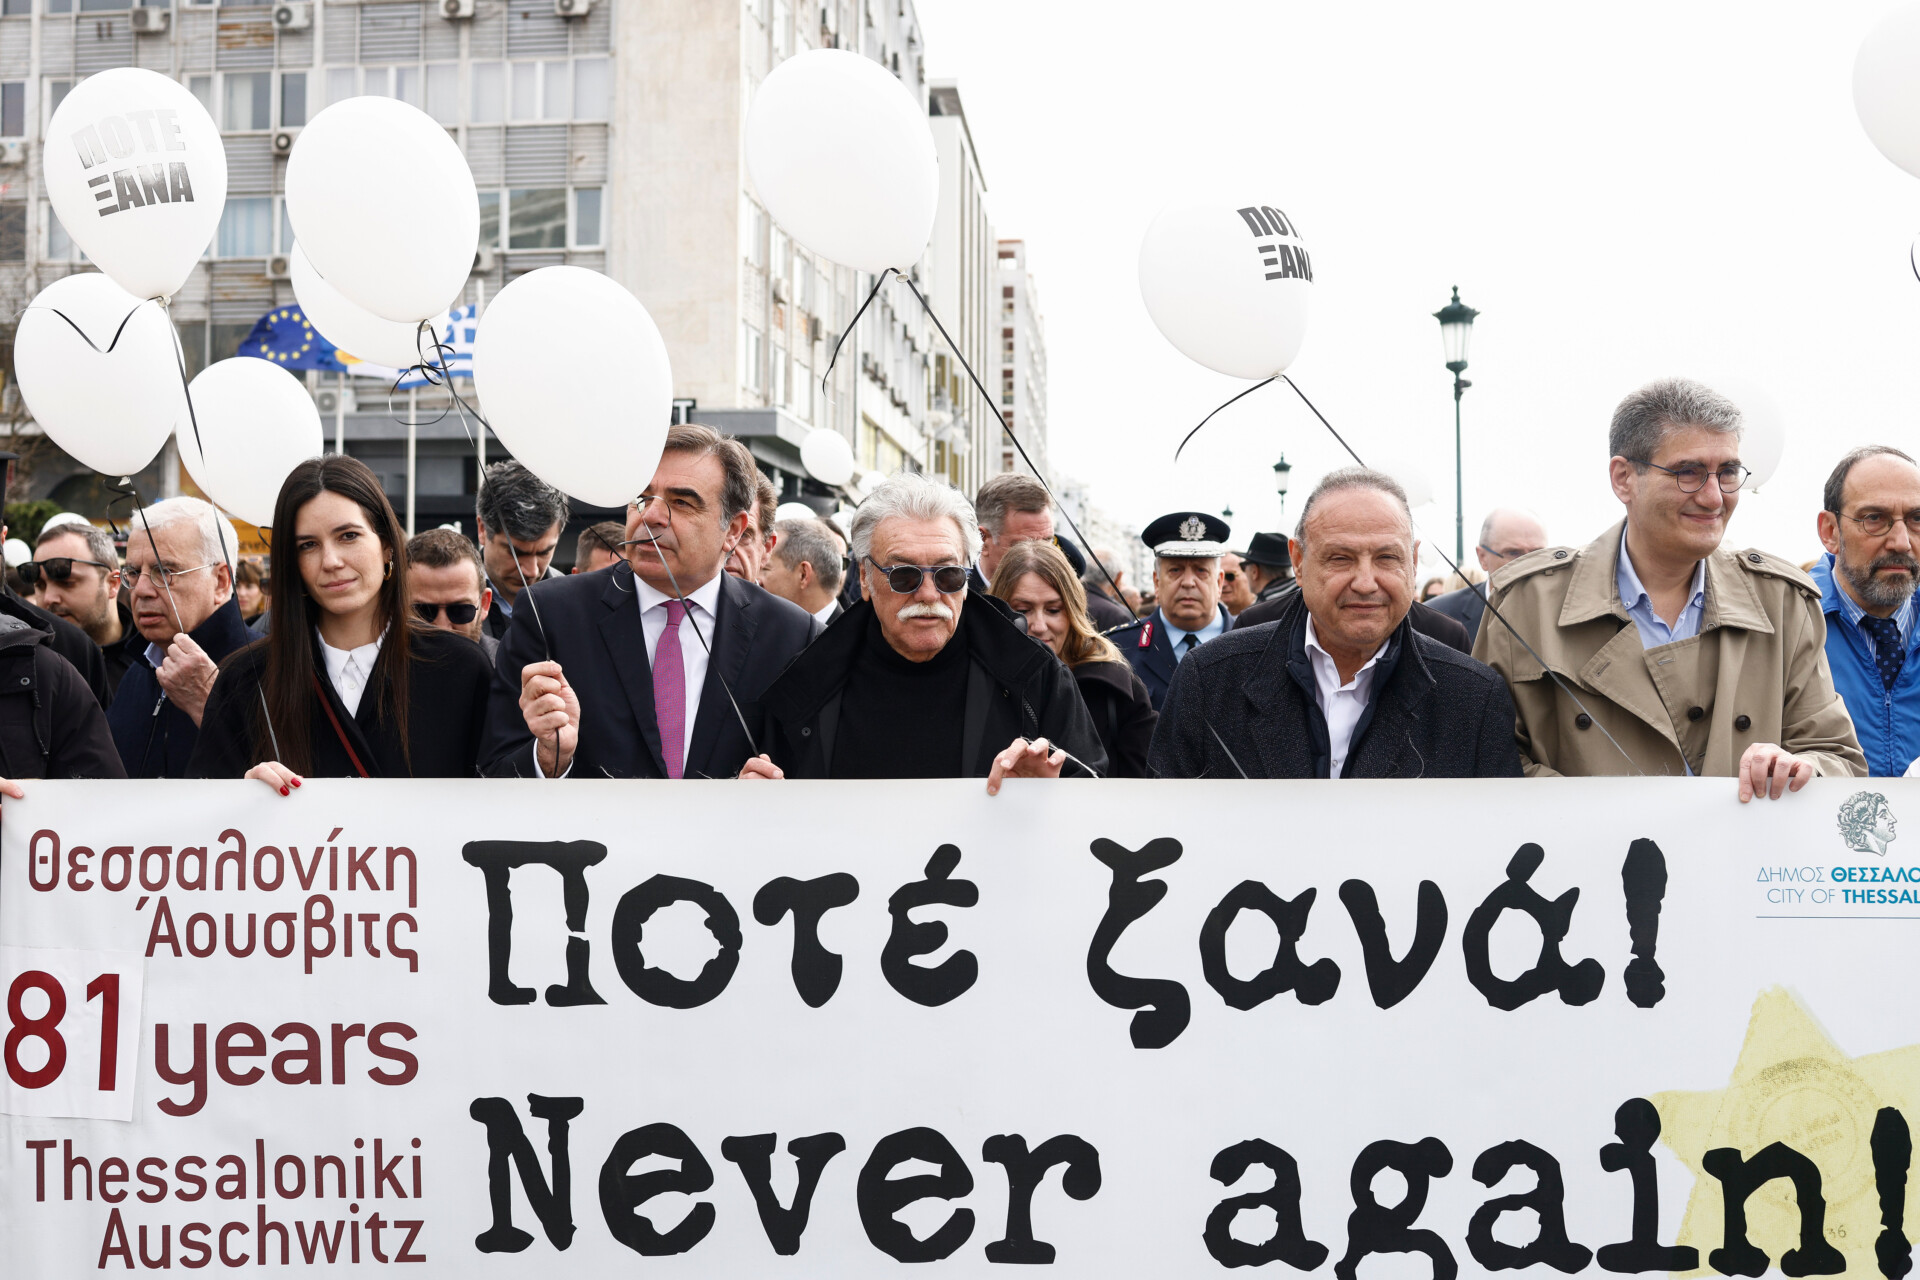 Ο δήμαρχος Θεσσαλονίκης Στέλιος Αγγελούδης, Ο πρόεδρος της Ισραηλιτικής Κοινότητας Θεσσαλονίκης Δαυίδ Σαλτιέλ και ο αντιπρόεδρος της Ευρωπαϊκής Επιτροπής για την Προώθηση του Ευρωπαϊκού Τρόπου Ζωής, Μαργαρίτης Σχοινάς, συμμετέχουν στη σιωπηλή πορεία μνήμης για τα θύματα του Ολοκαυτώματος, στη Θεσσαλονίκη © ΑΠΕ-ΜΠΕ/ΑΠΕ-ΜΠΕ/ΑΧΙΛΛΕΑΣ ΧΗΡΑΣ